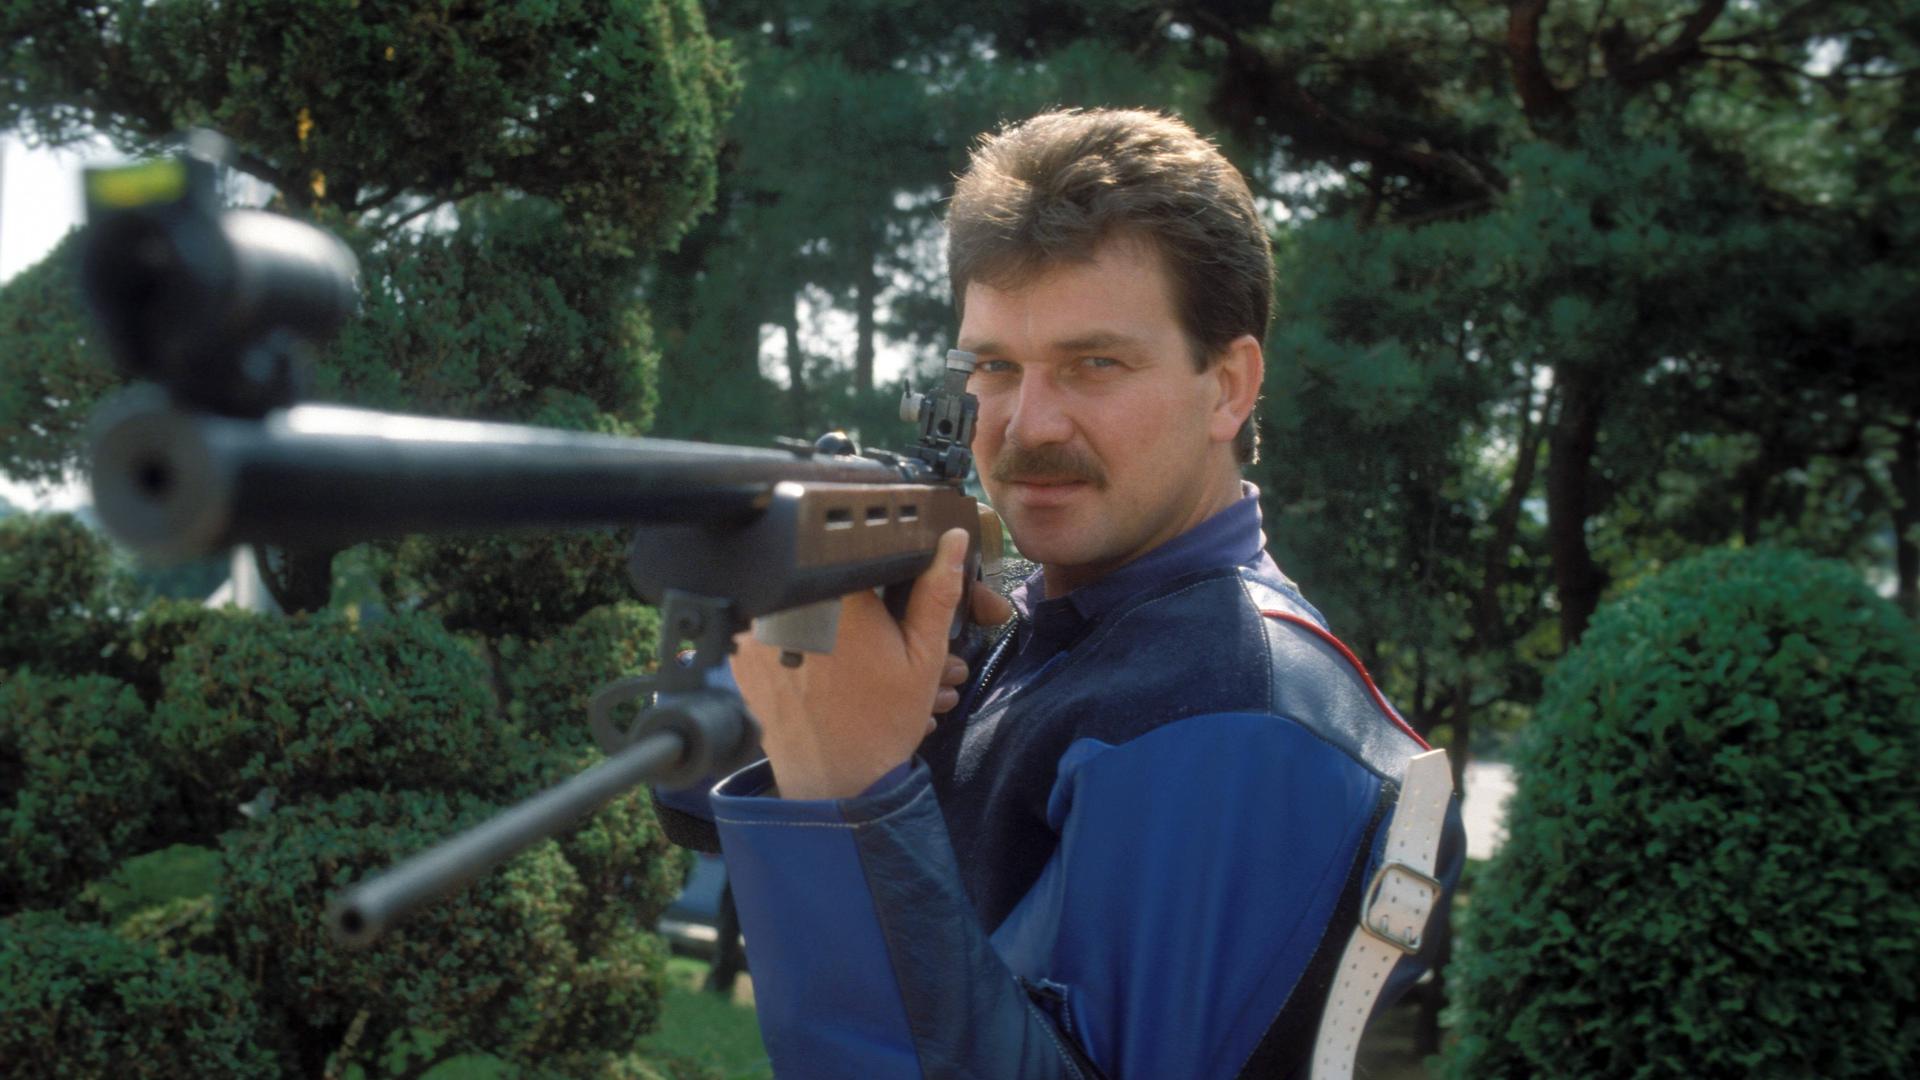 Der Kronauer Schütze Kurt Hillenbrand vor den Olympischen Spielen 1988 in Seoul, die die letzte Großveranstaltung in seiner Karriere waren.